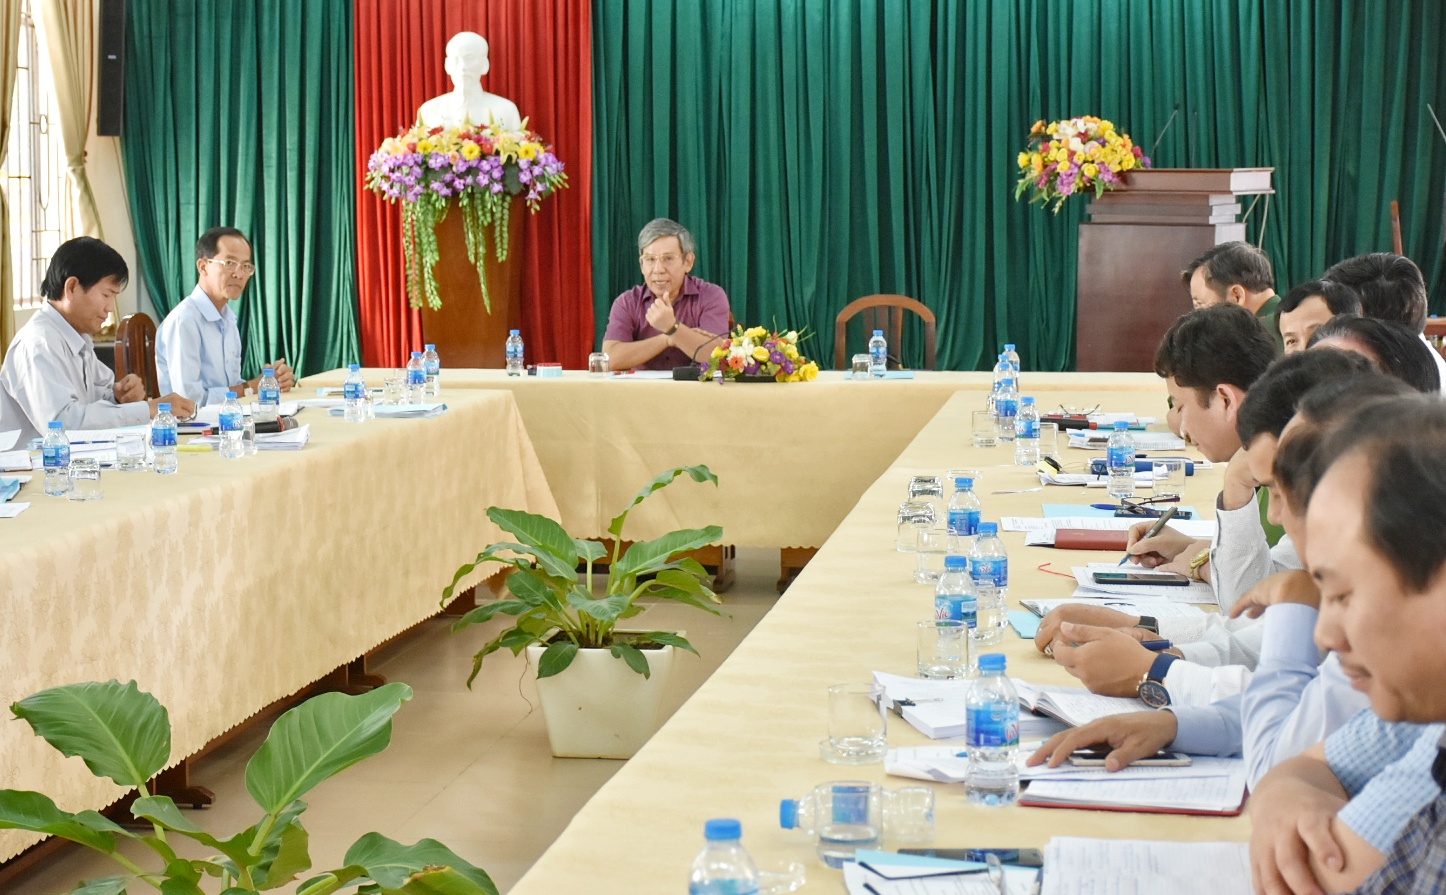 Ông Nguyễn Lập, Chủ tịch UBND TP. Vũng Tàu, Trưởng Ban Chỉ huy PCTT&TKCN TP. Vũng Tàu chủ trì cuộc họp.